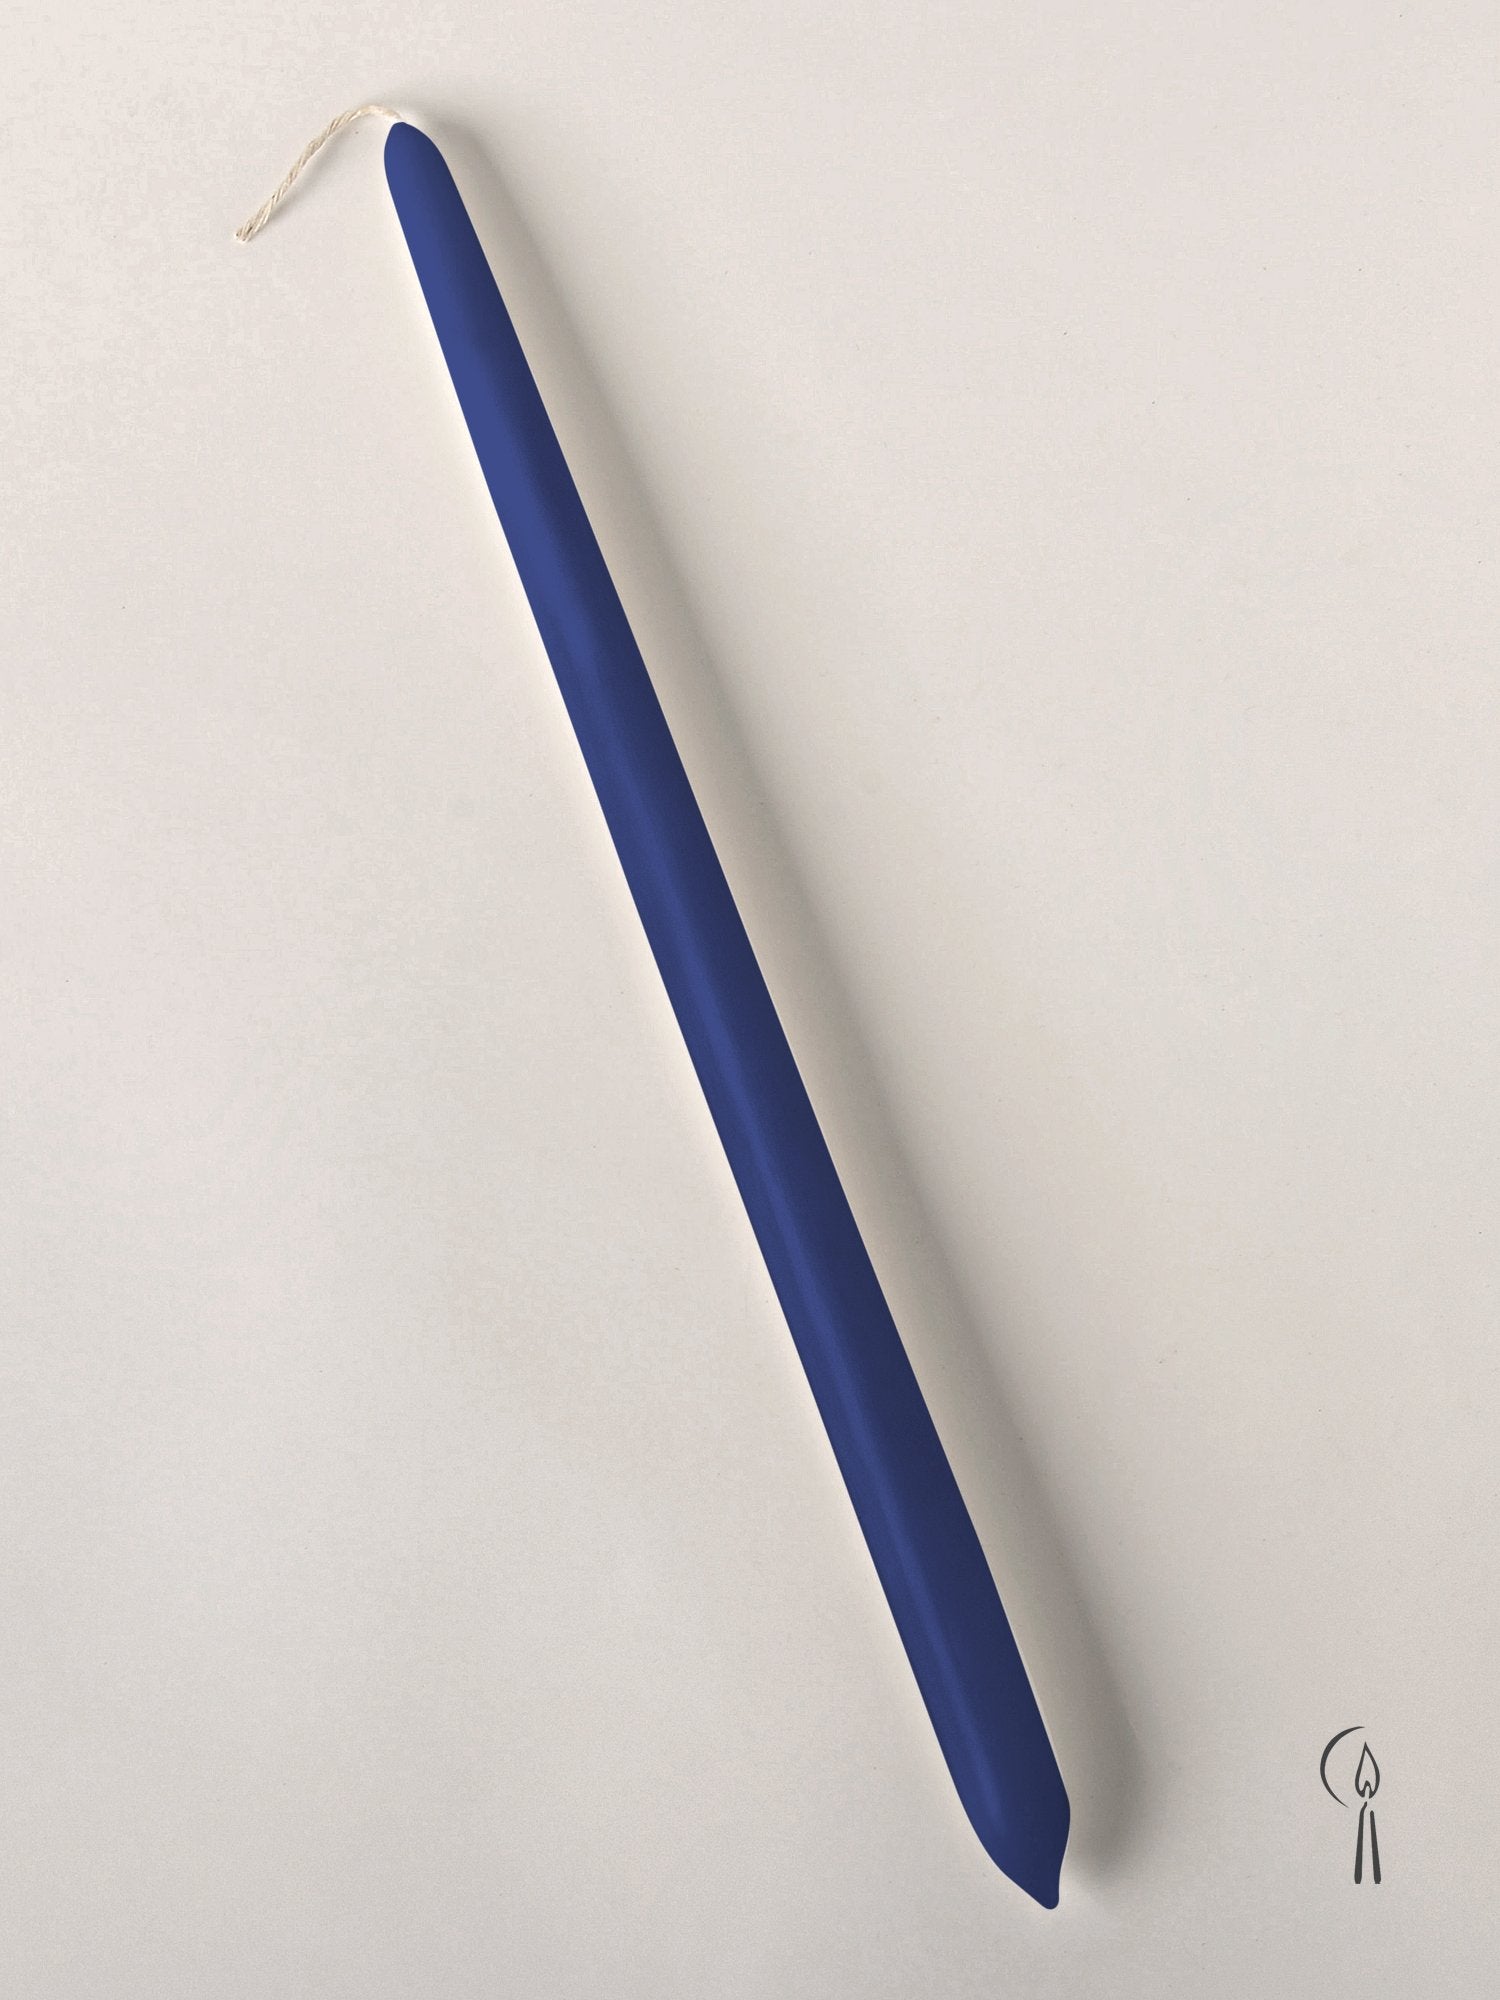 Λαμπάδα Αρωματική Κλασσική Μπλε 32 cm